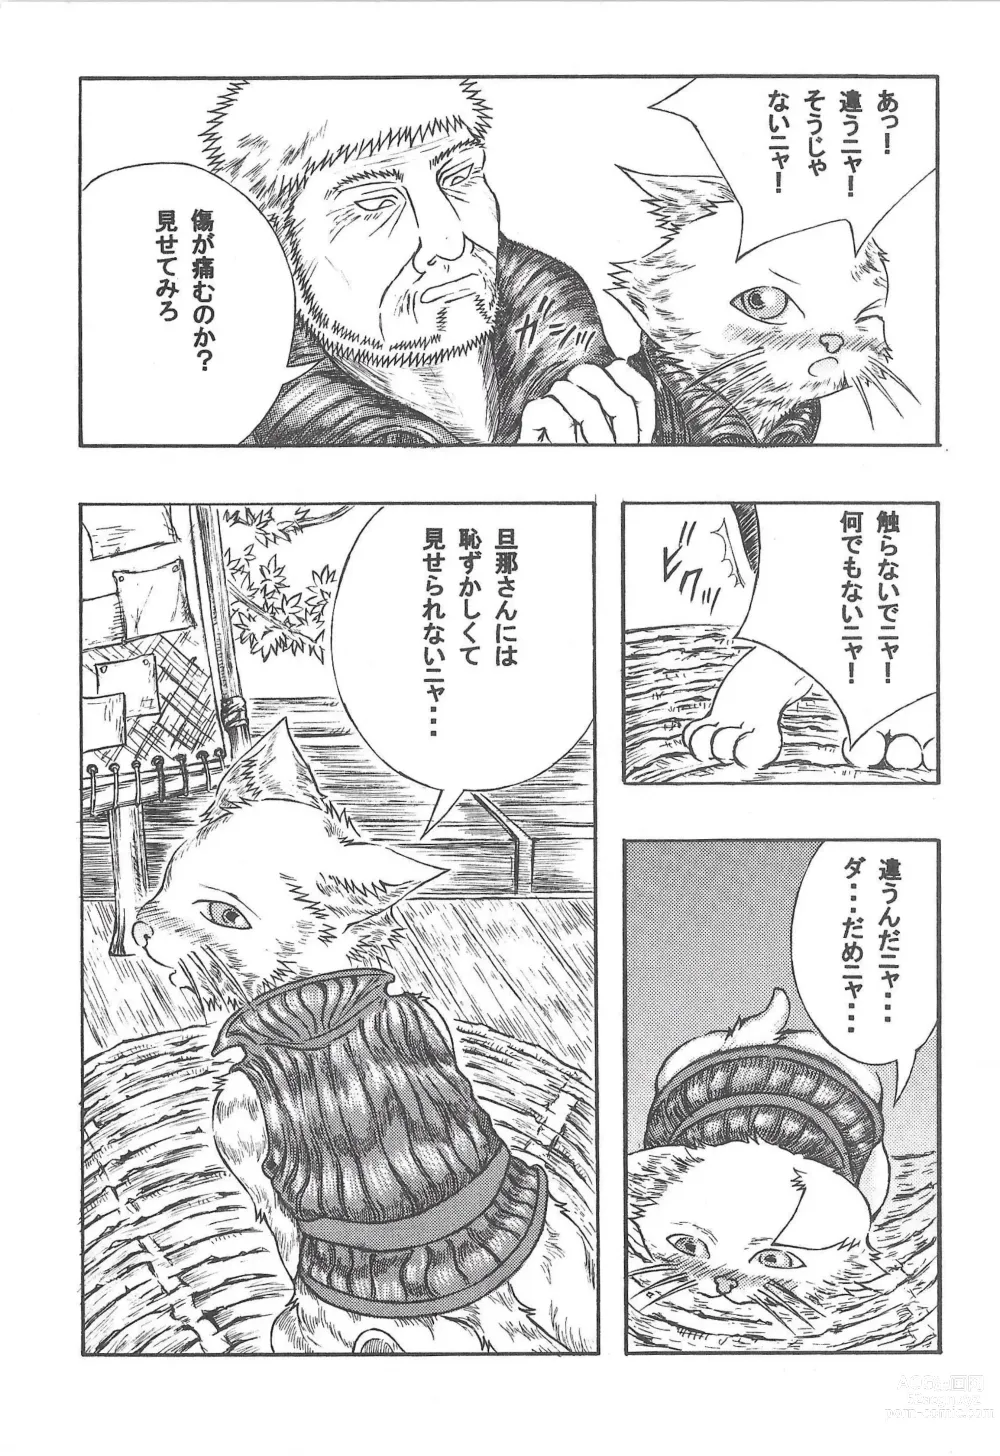 Page 12 of doujinshi Airu Monhun Dream